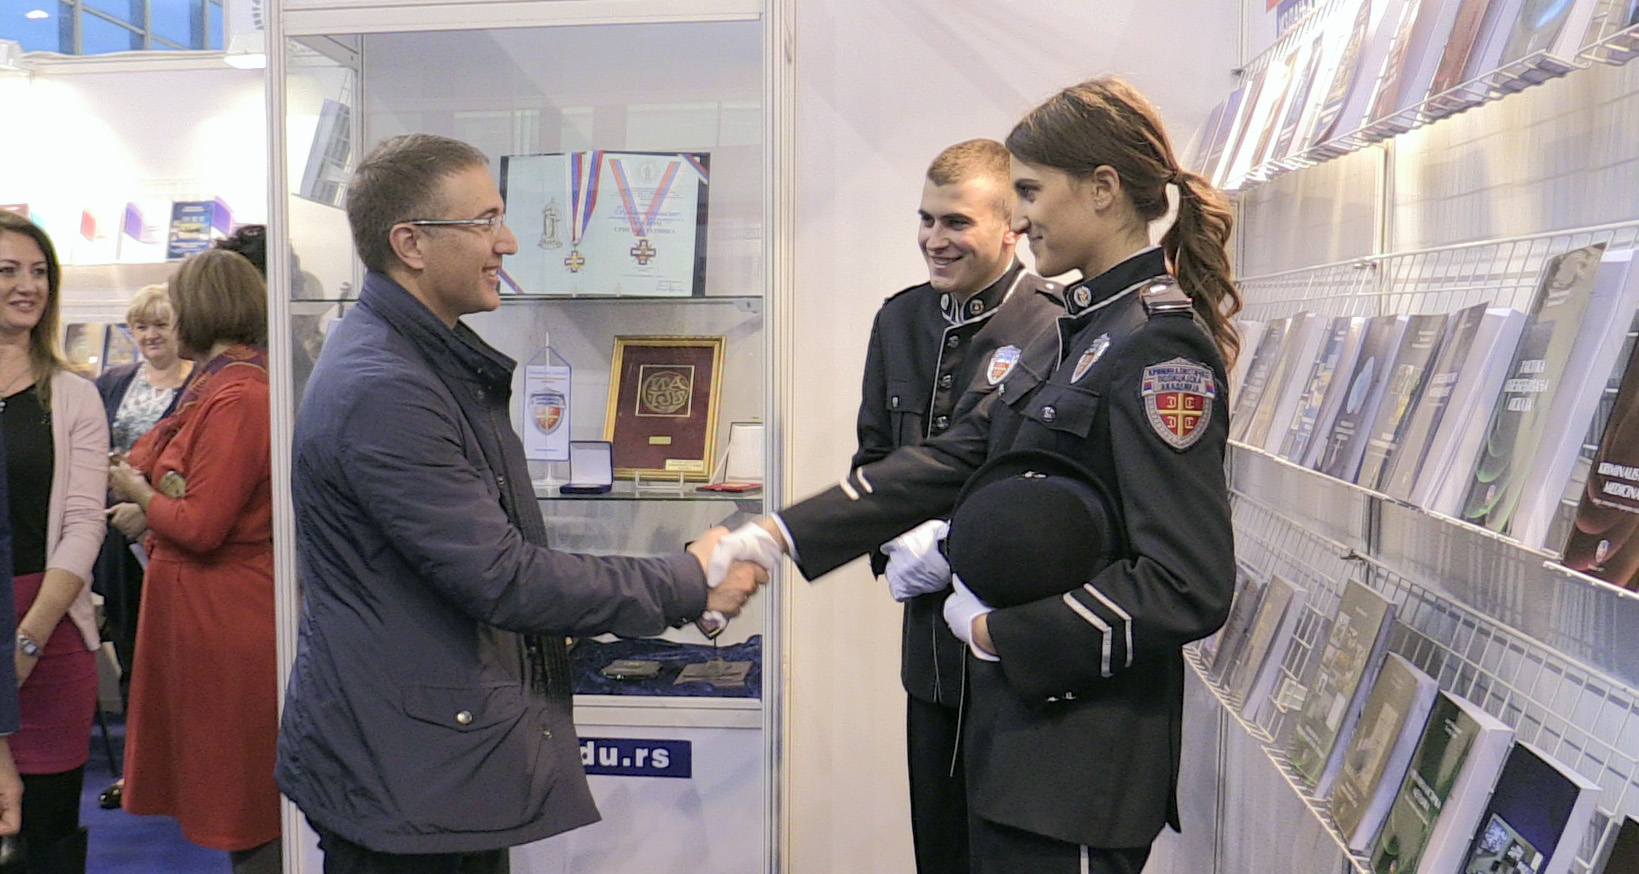 Mинистар Стефановић обишао штанд Криминалистичко-полицијске академије на Међународном сајму књига